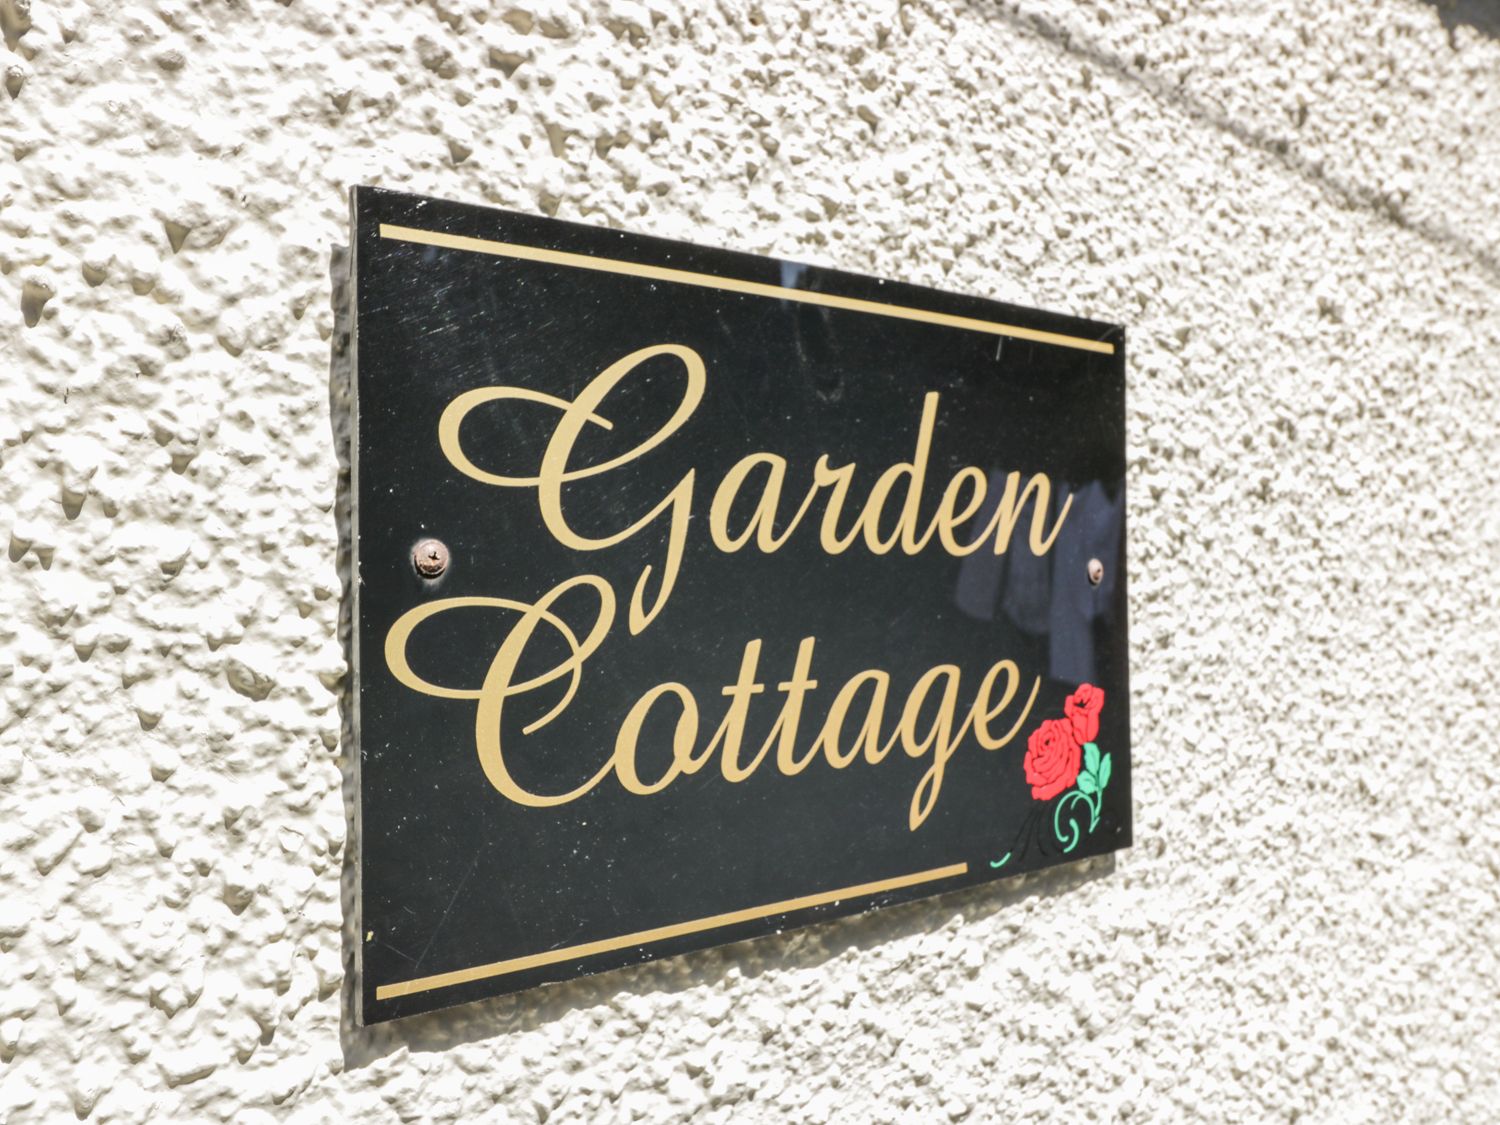 Garden Cottage, Scotland